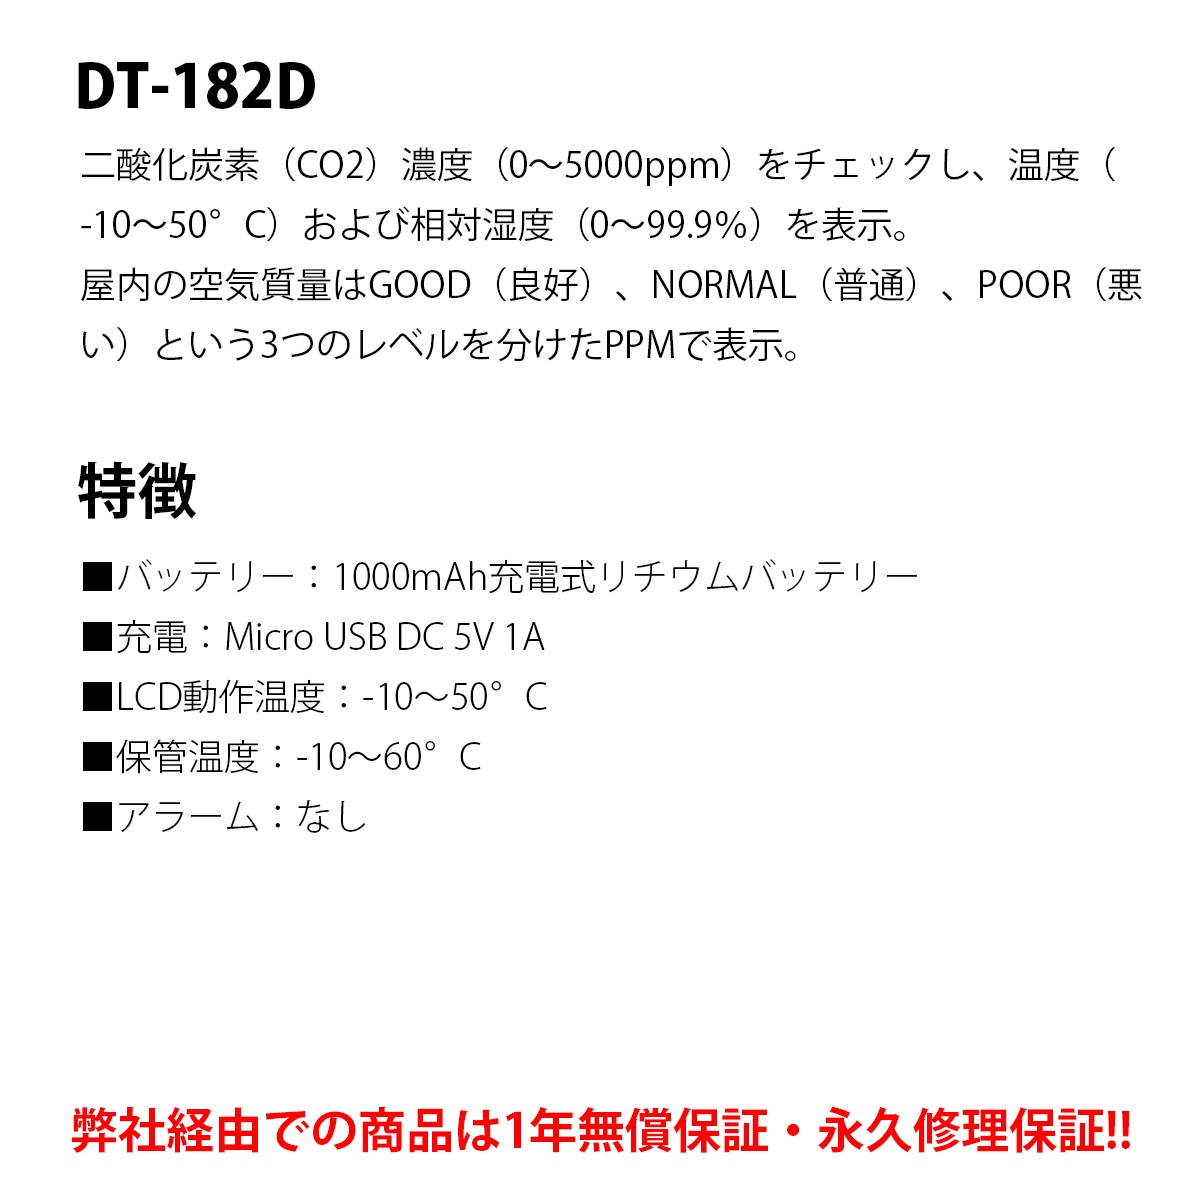 DT-182D